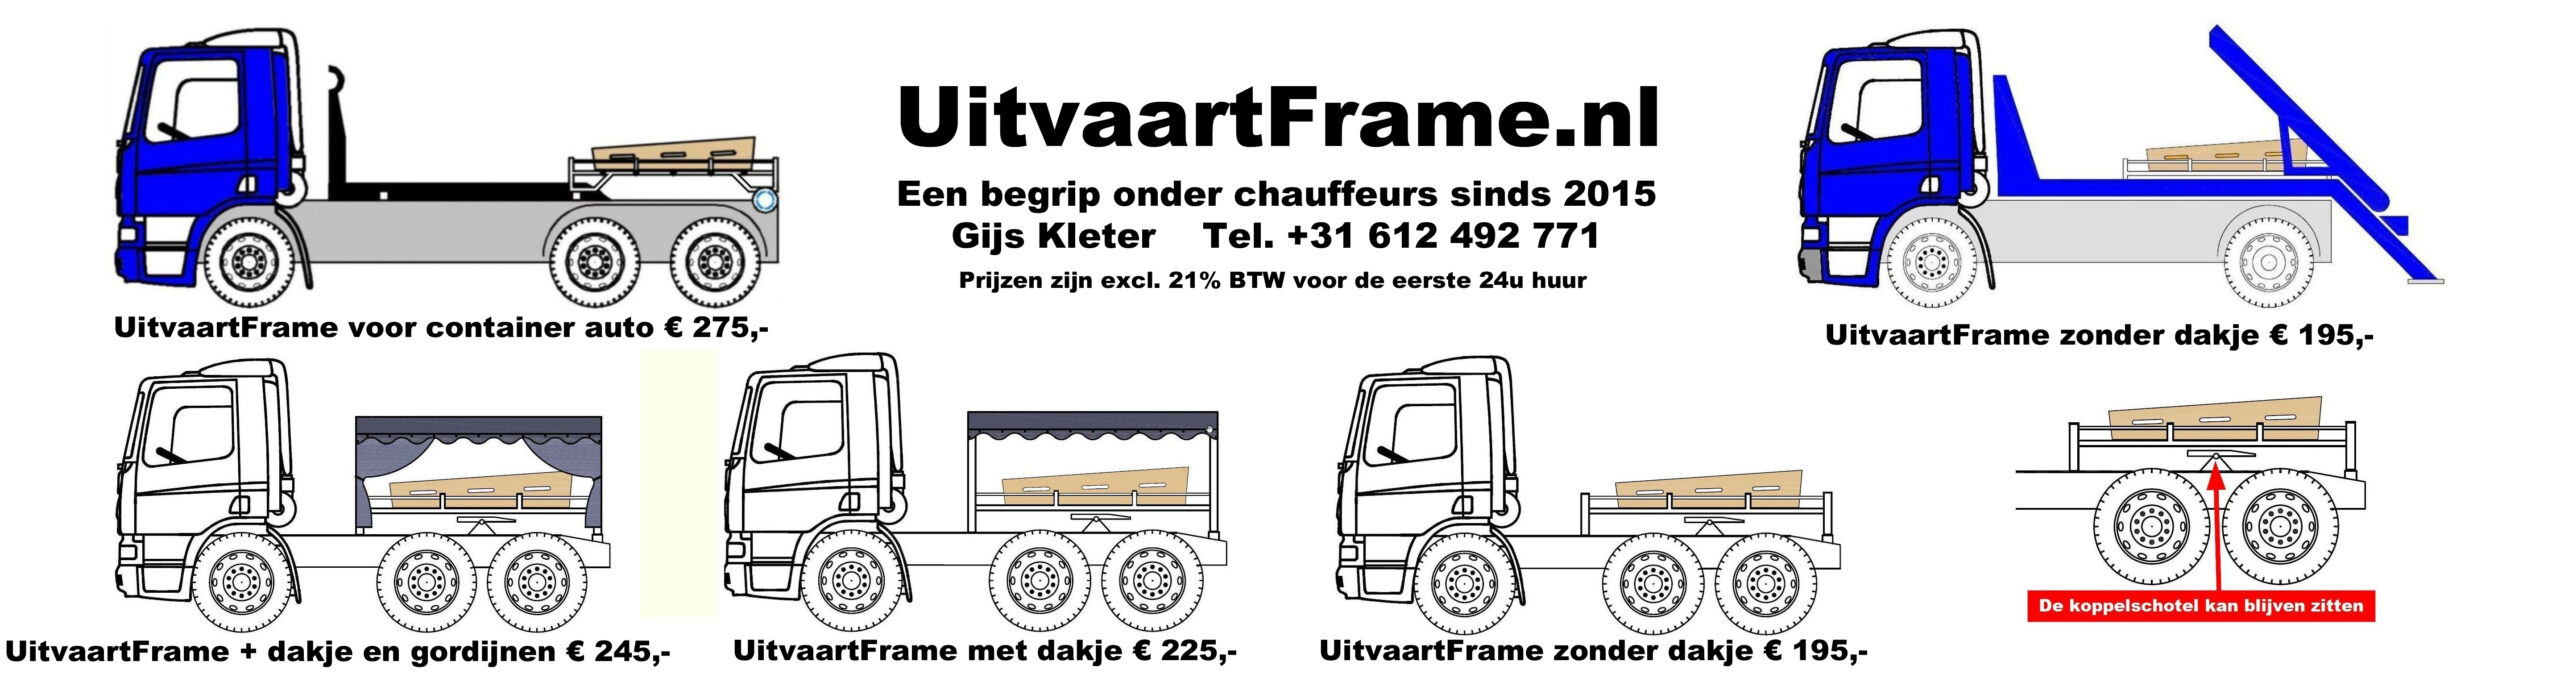 Kistdragers voor vrachtwagens te huur bij UitvaartFrame.nl